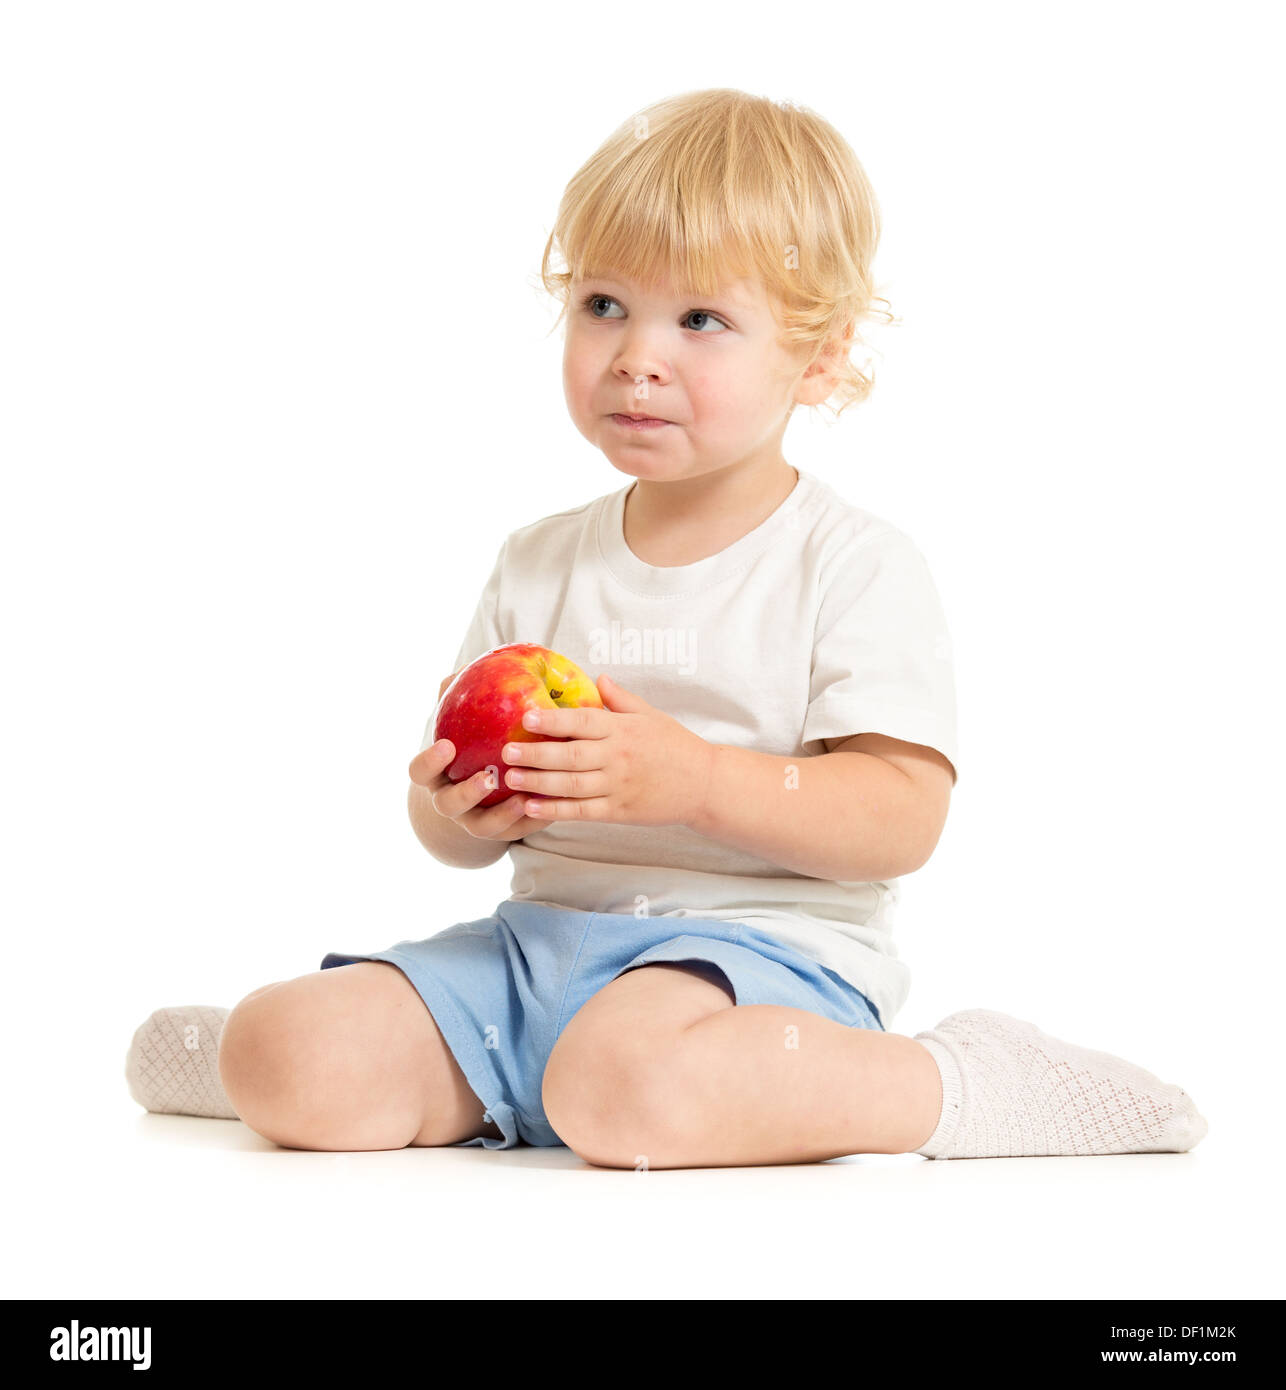 ernsthafte Kind gesunder Ernährung isoliert Stockfoto